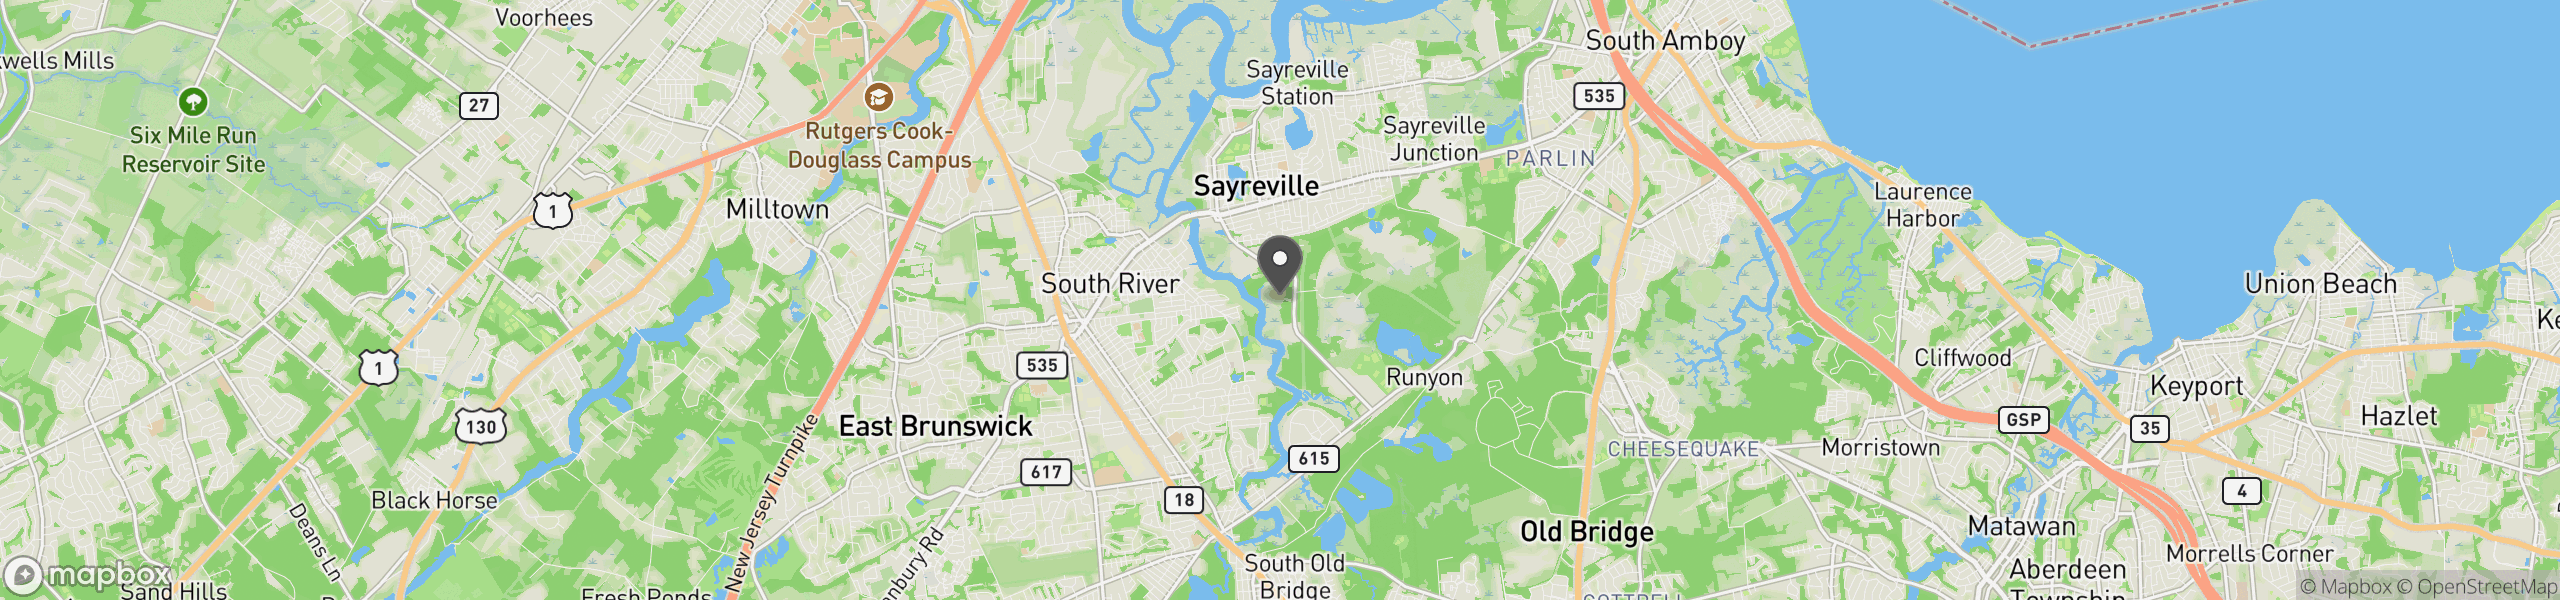 Sayreville, NJ